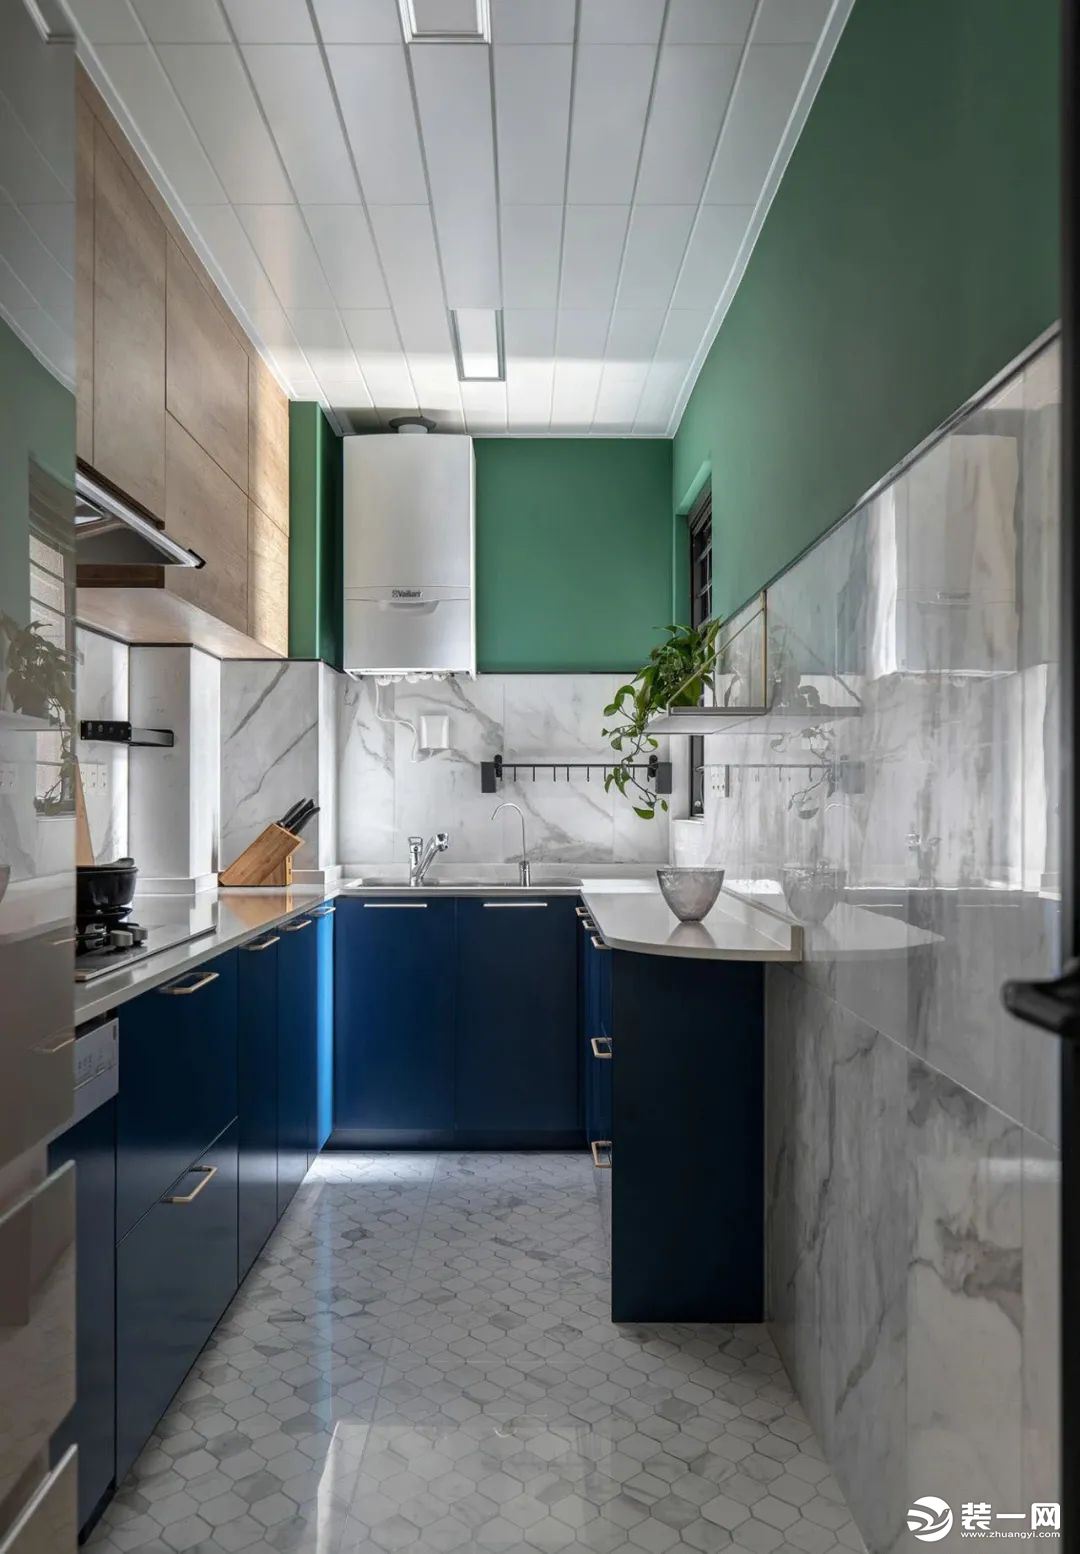  厨房，灰色系小花砖地面，搭配灰白石纹墙砖+绿色墙面，绿色与蓝色柜体上下呼应，色彩基调皆与其他空间统